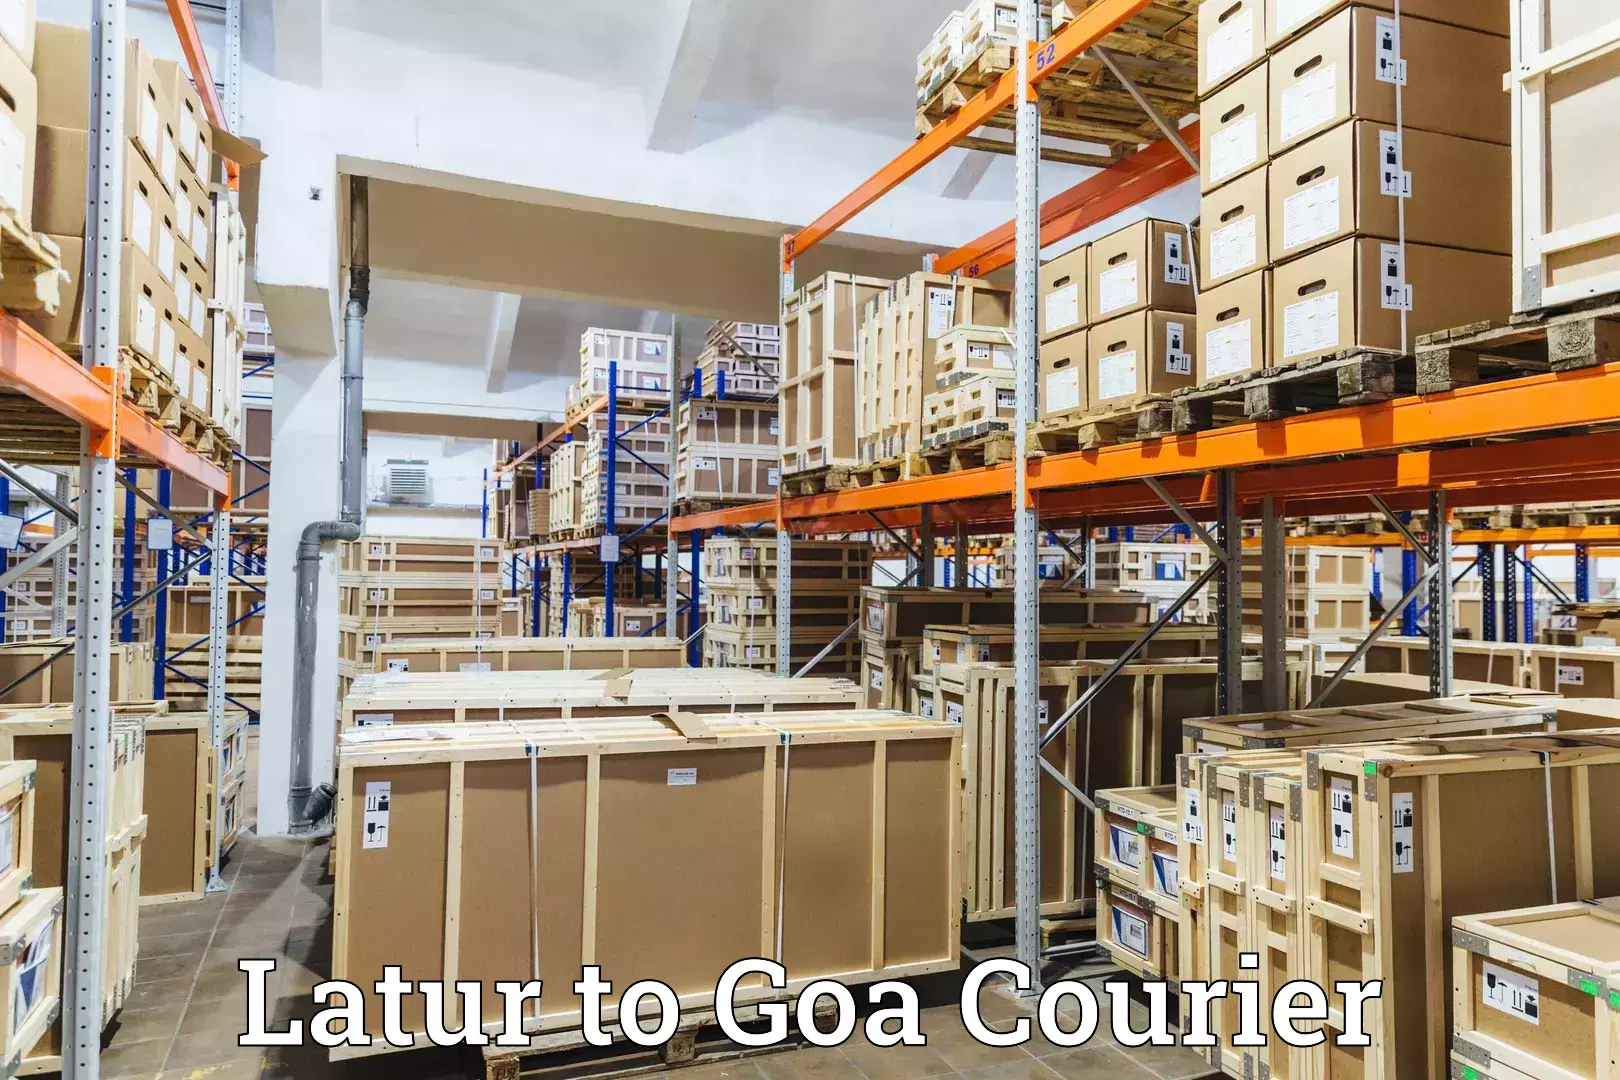 Premium courier solutions Latur to Vasco da Gama